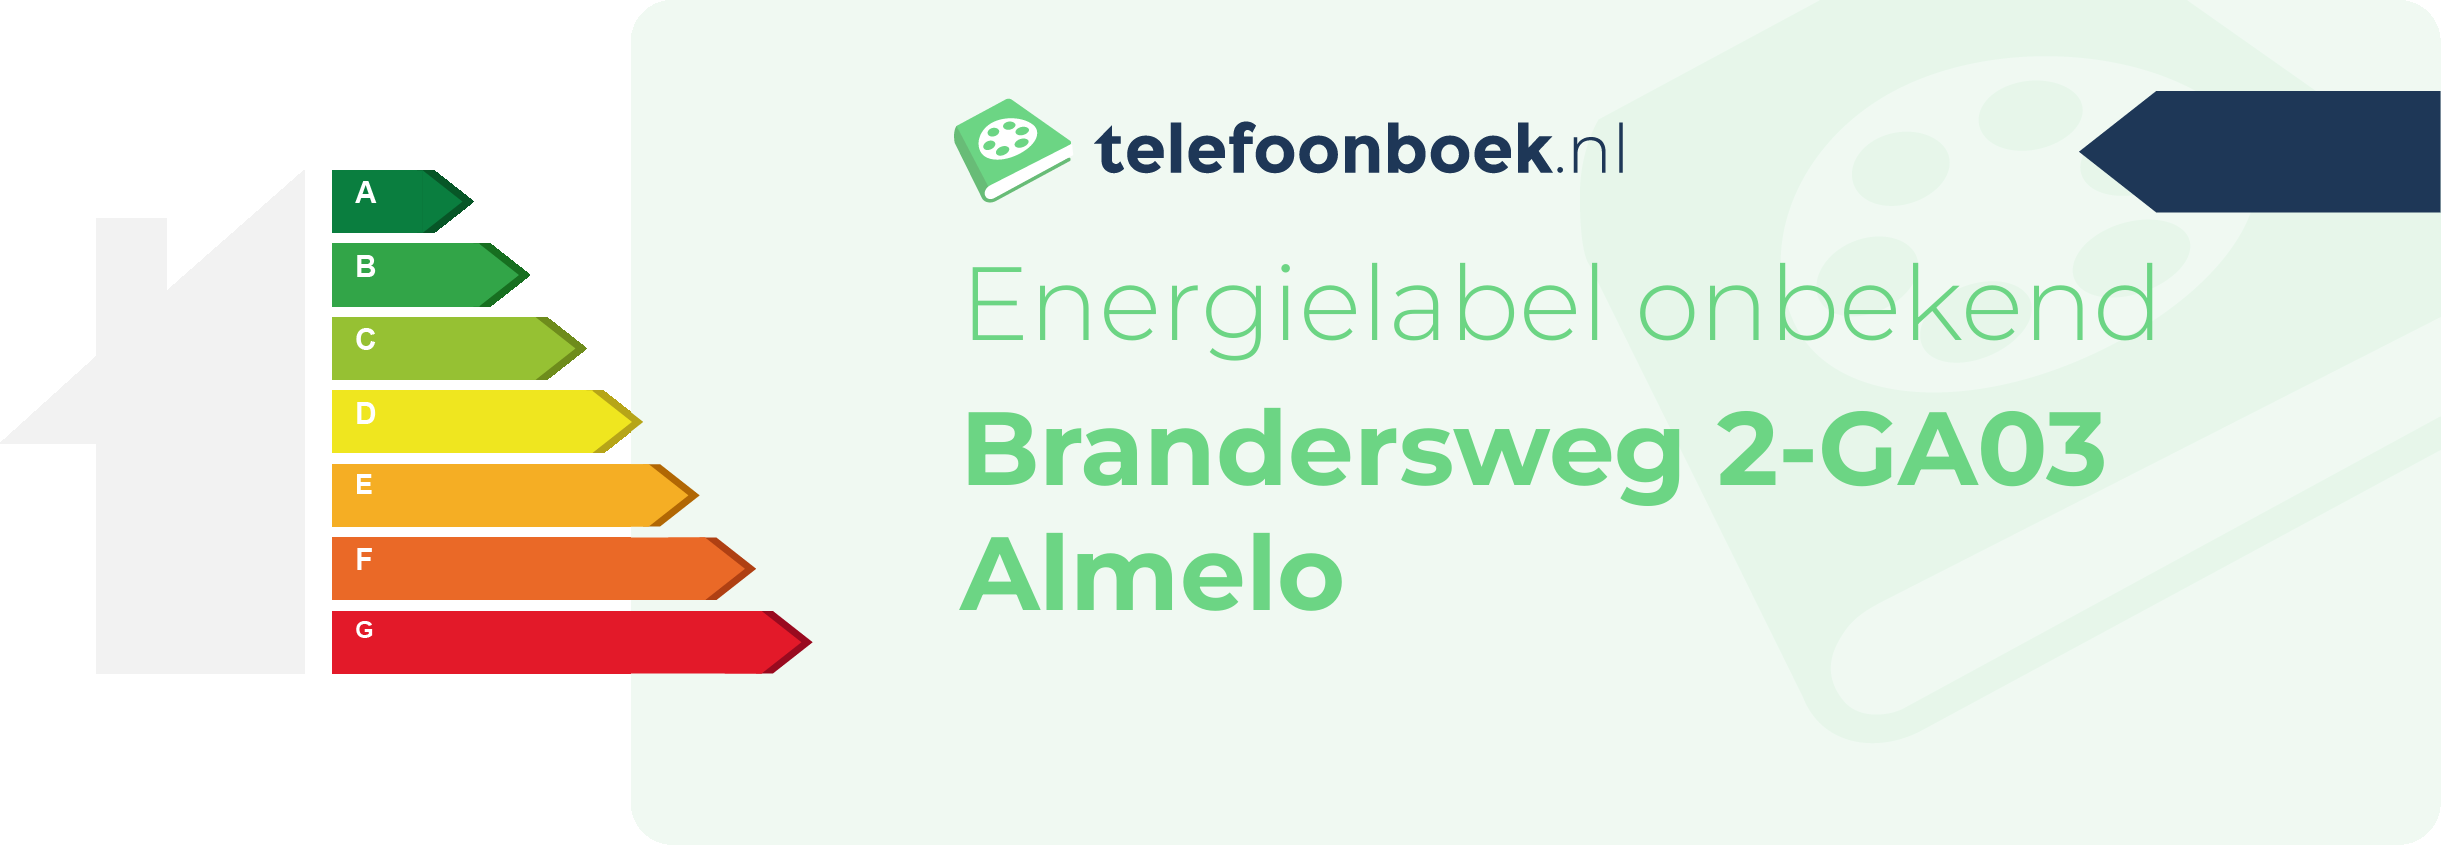 Energielabel Brandersweg 2-GA03 Almelo